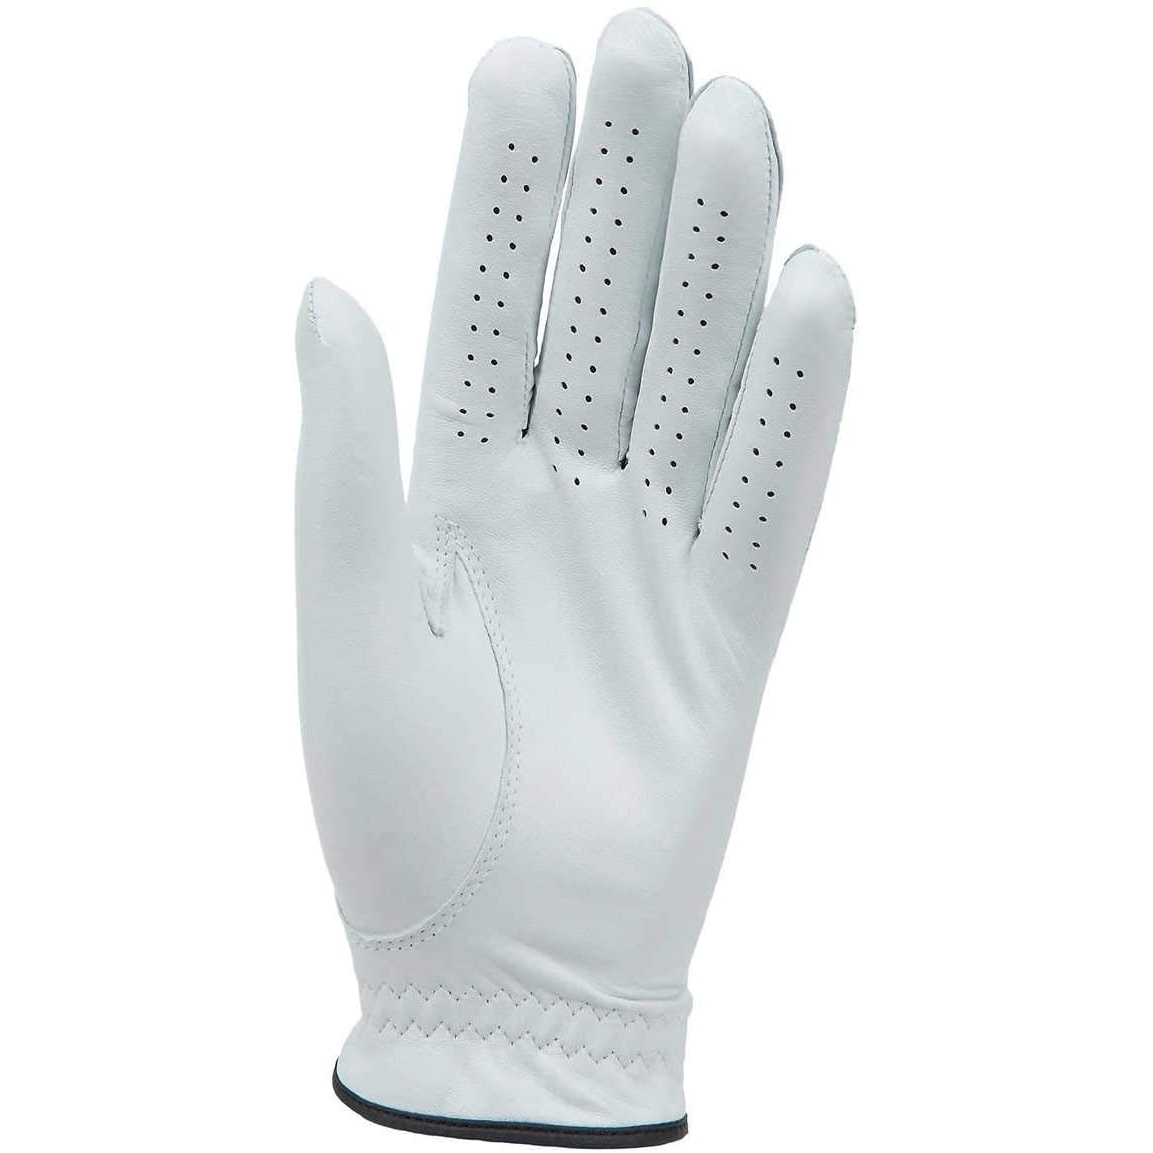 Kirkland Signature Golf Gloves Premium Cabretta Leather, X-Large (4 Count)